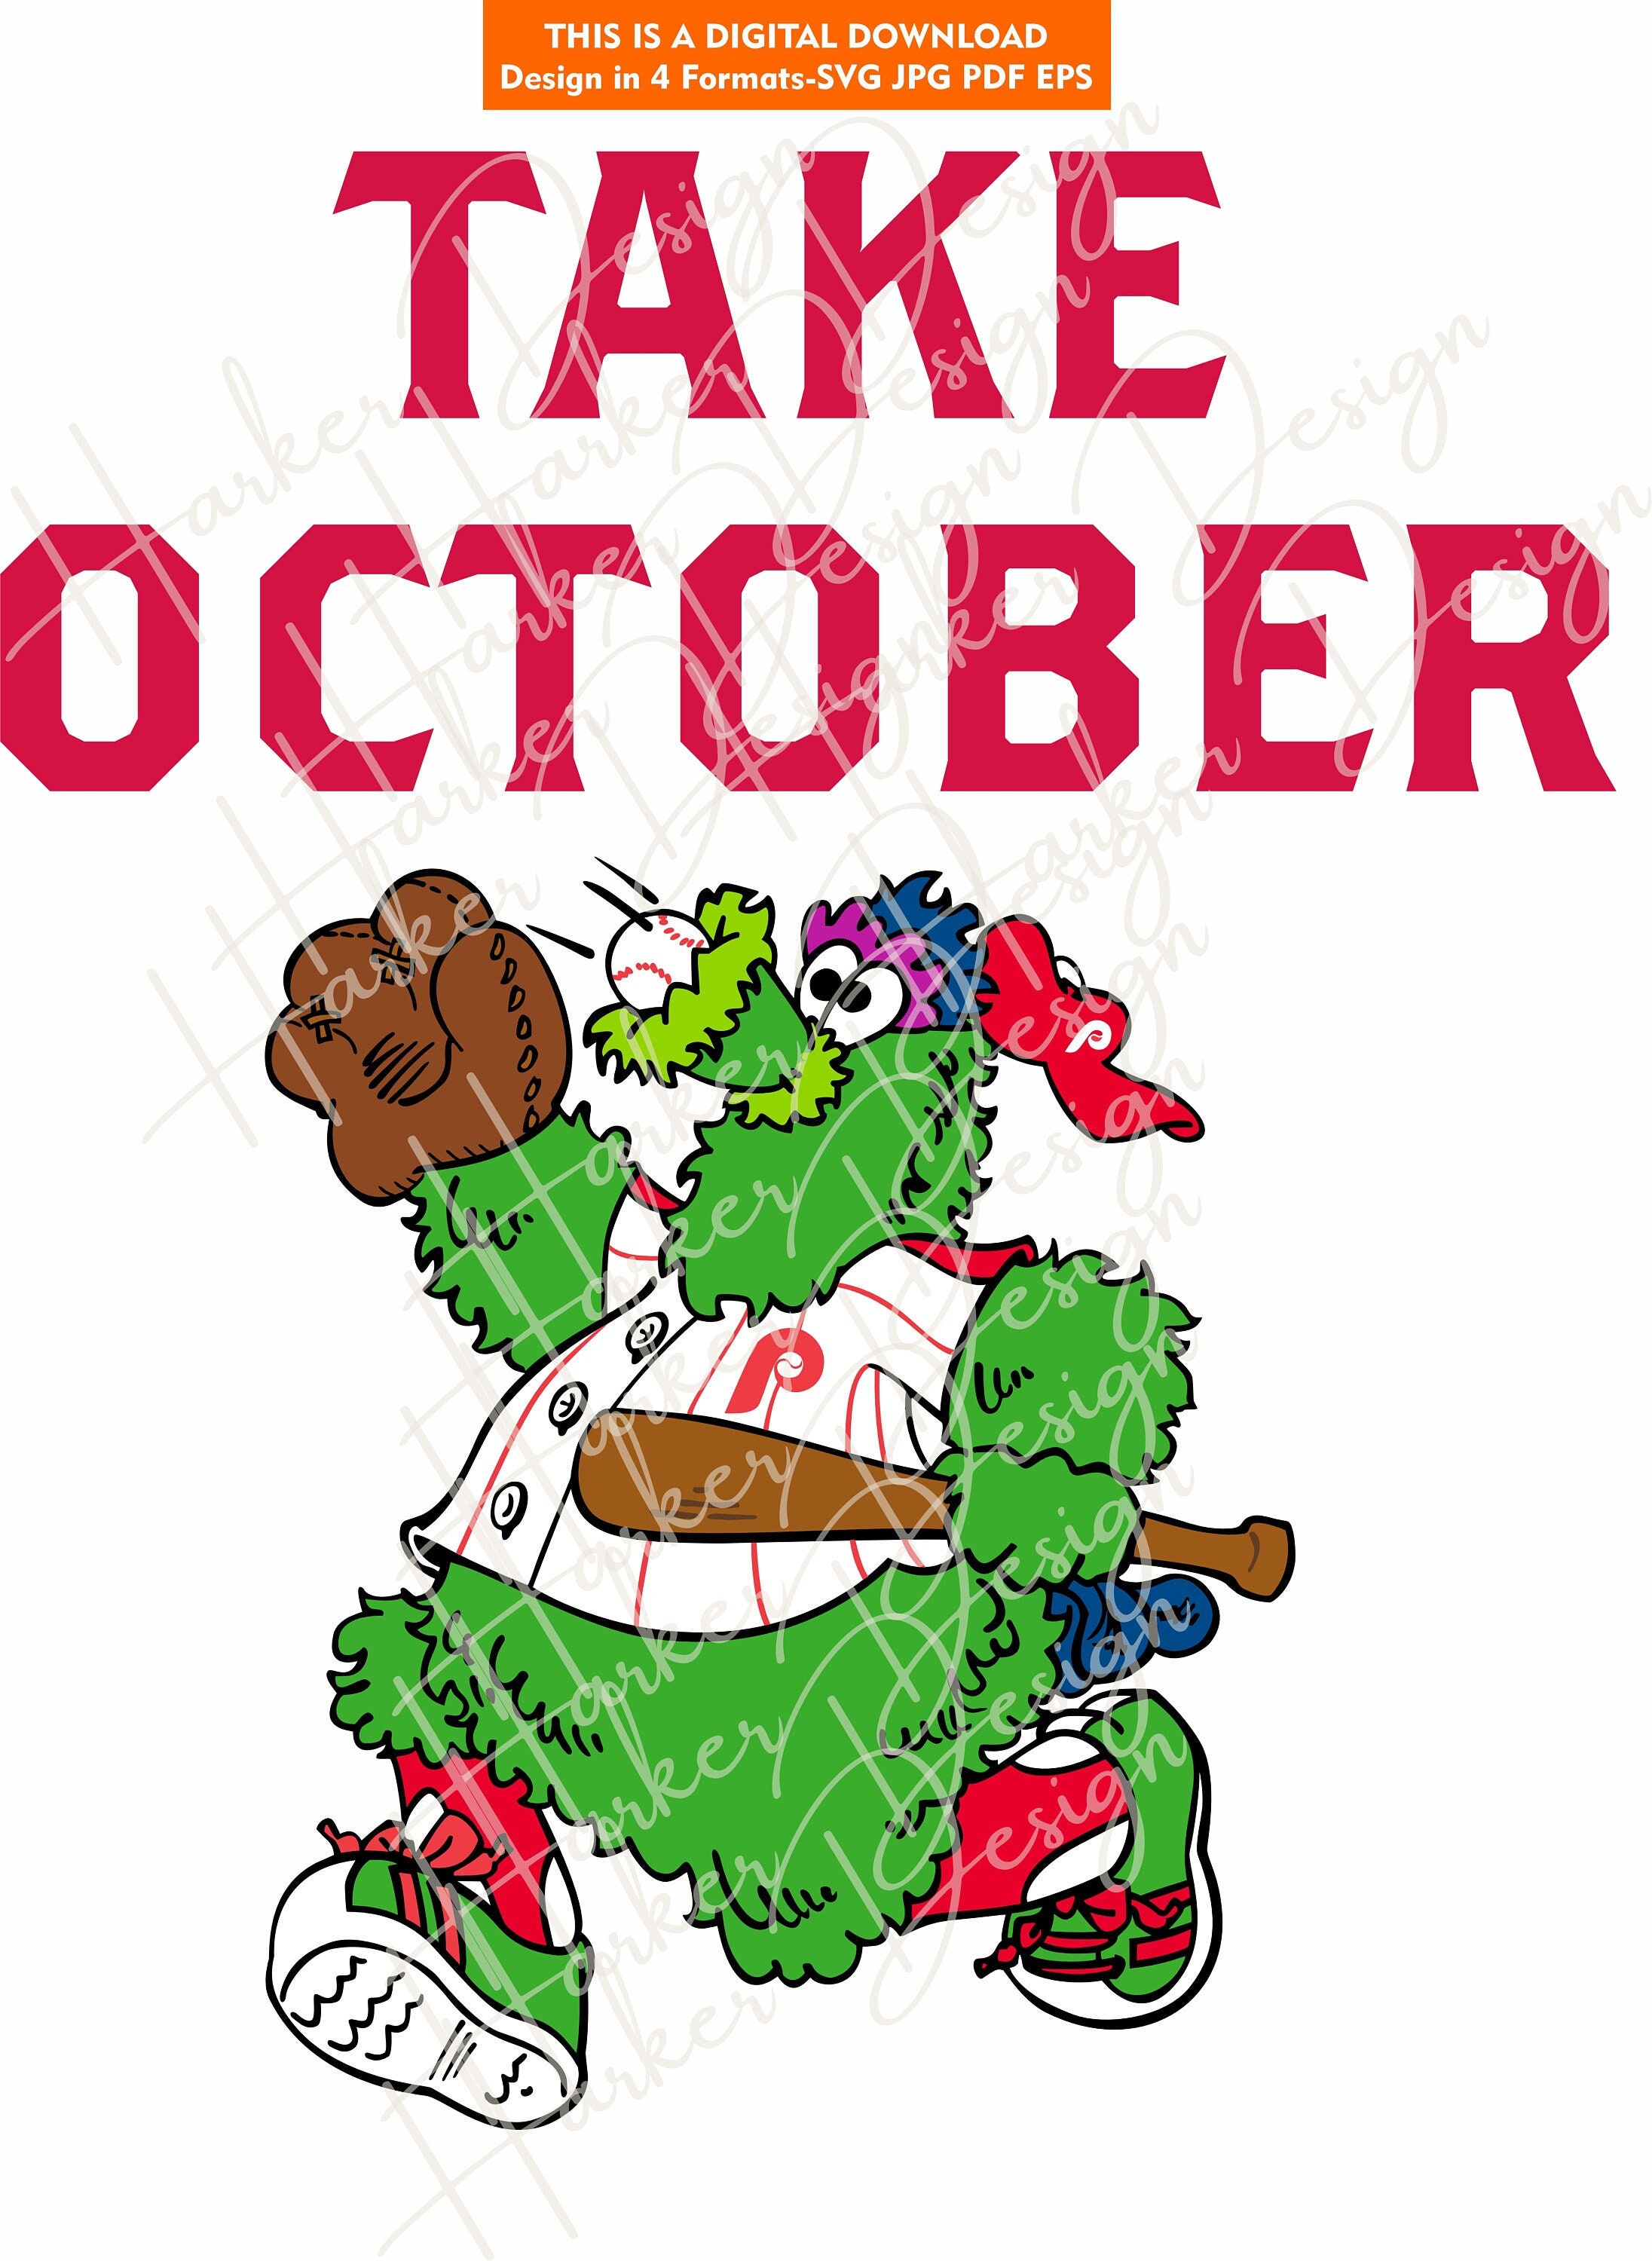 The Hunt For Red October Philadelphia Phillies In 2022 MLB World Series  Unisex T-Shirt - REVER LAVIE